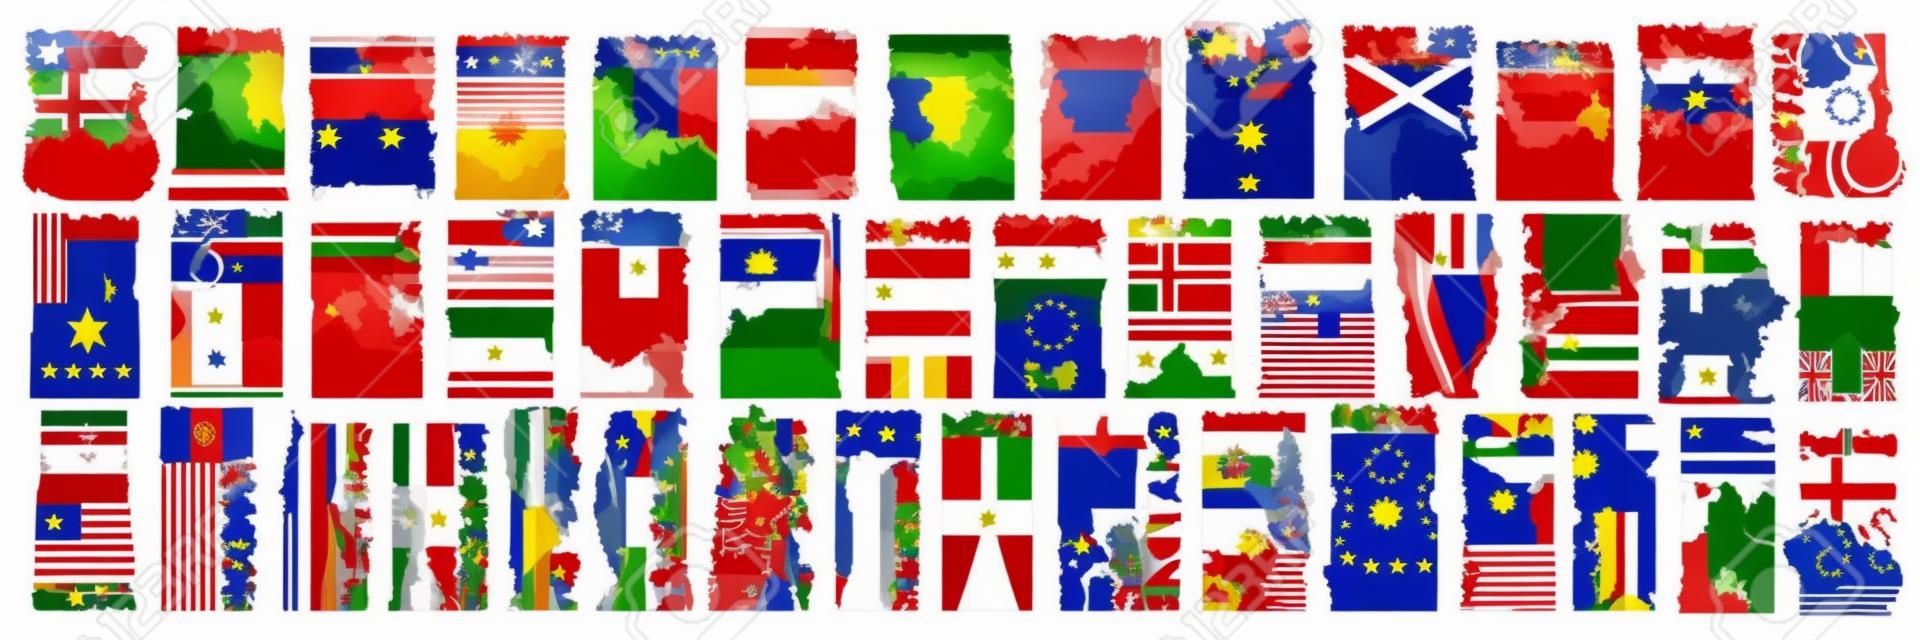 Set vettoriale di paesi europei con bandiere e simboli, 43 etichette verticali isolate con bandiere statali nazionali e font pennello per parole diverse, adesivi di design artistico per il giorno dell'indipendenza europea.